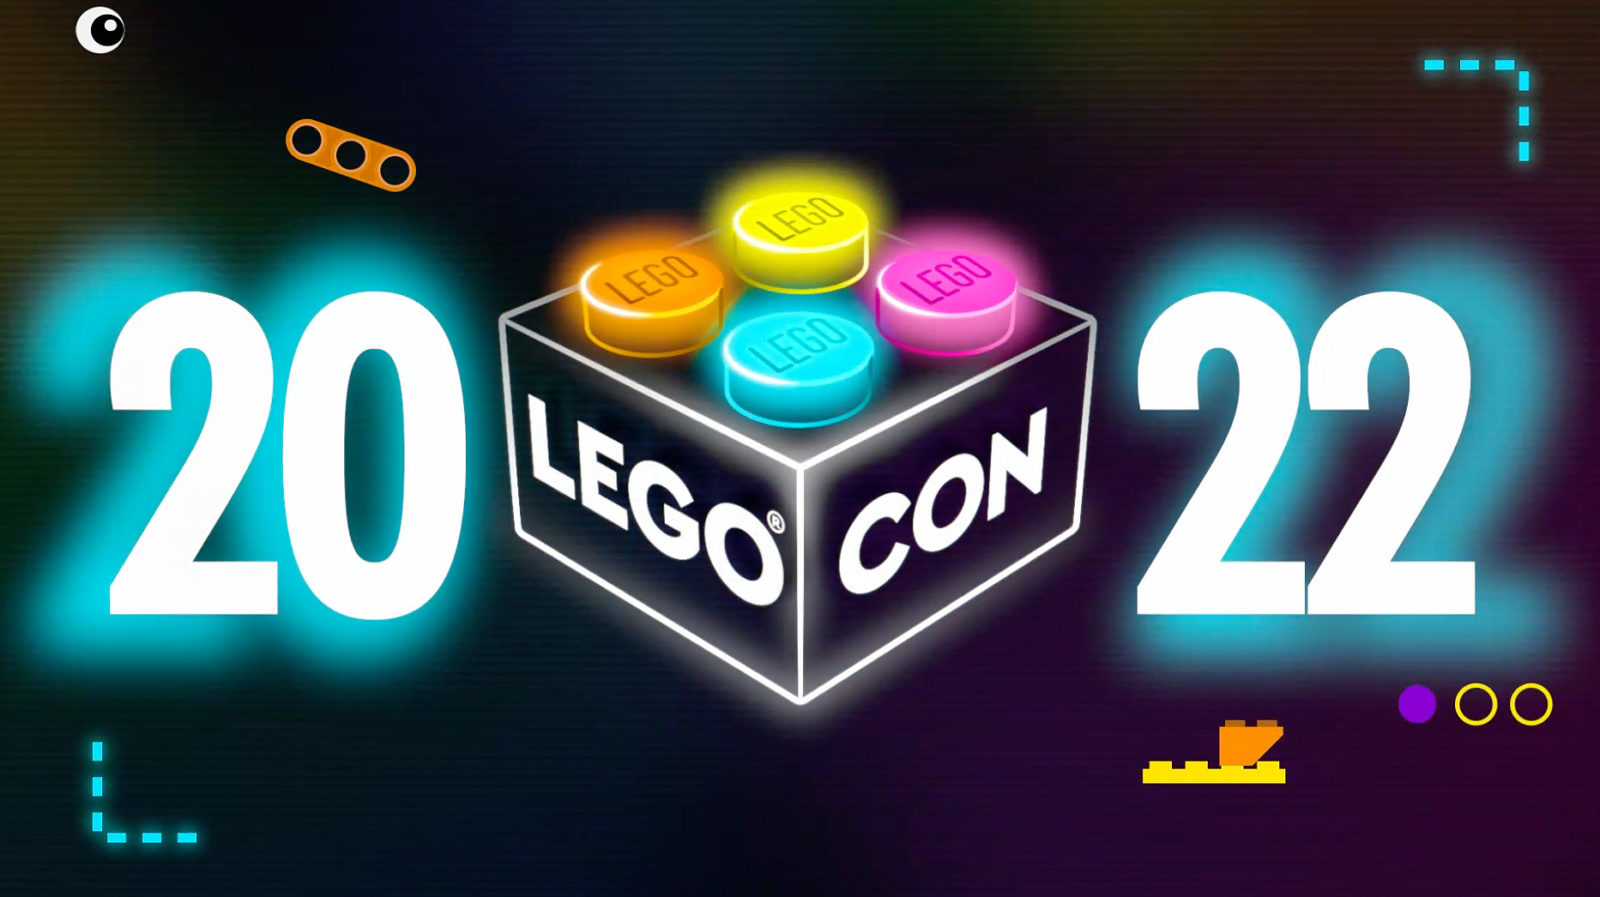 LEGO CON 2022: כנס LEGO Online חוזר ב-18 ביוני 2022